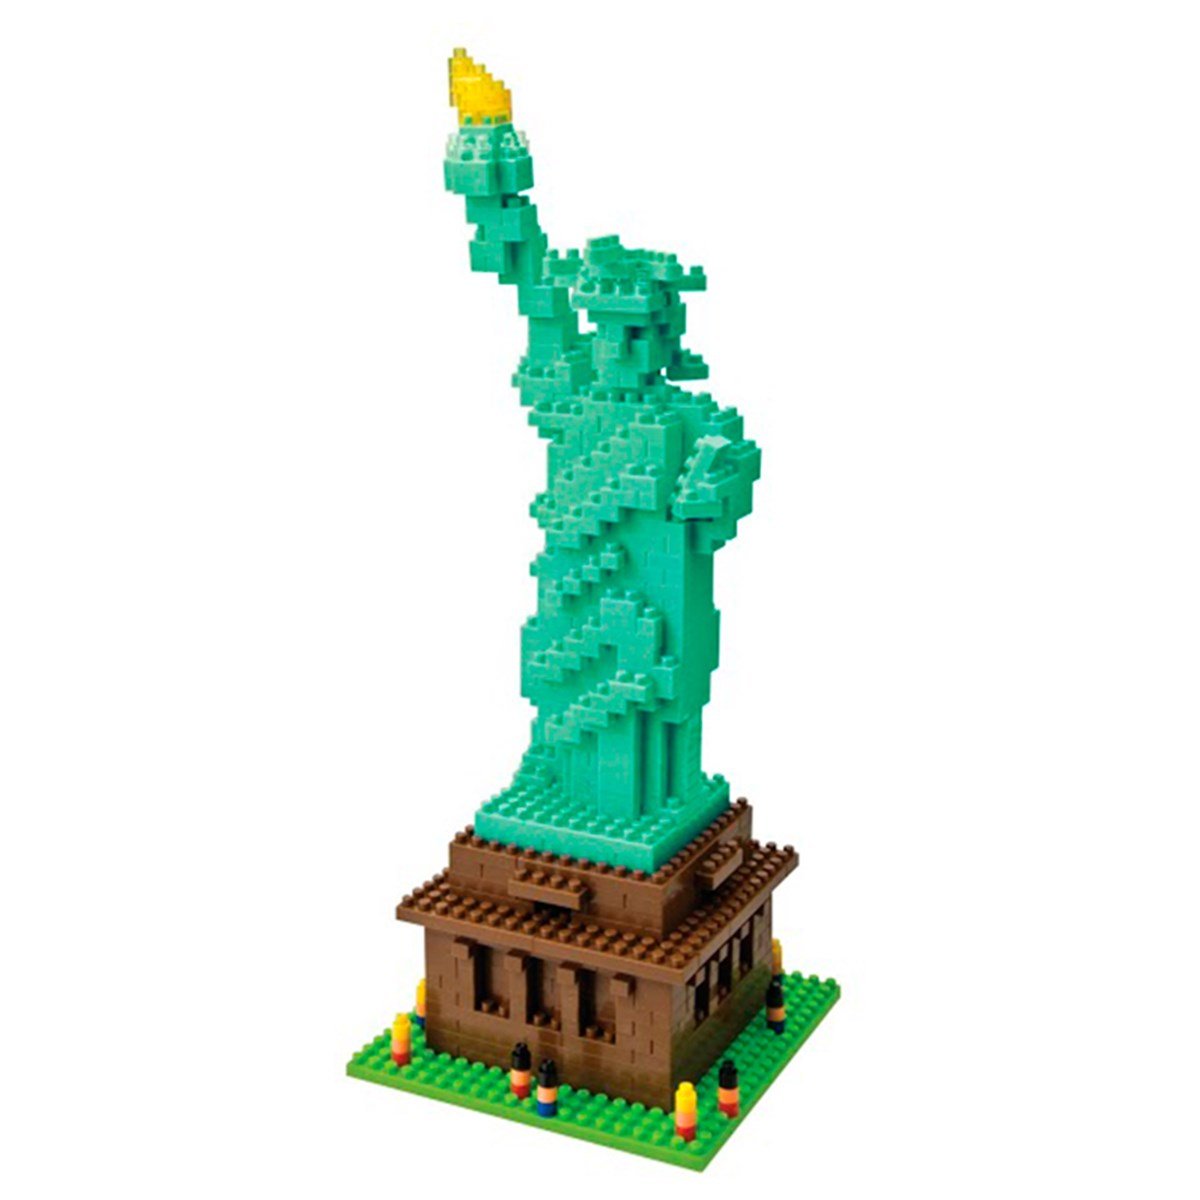 Statue Of Liberty USA - Nanoblock